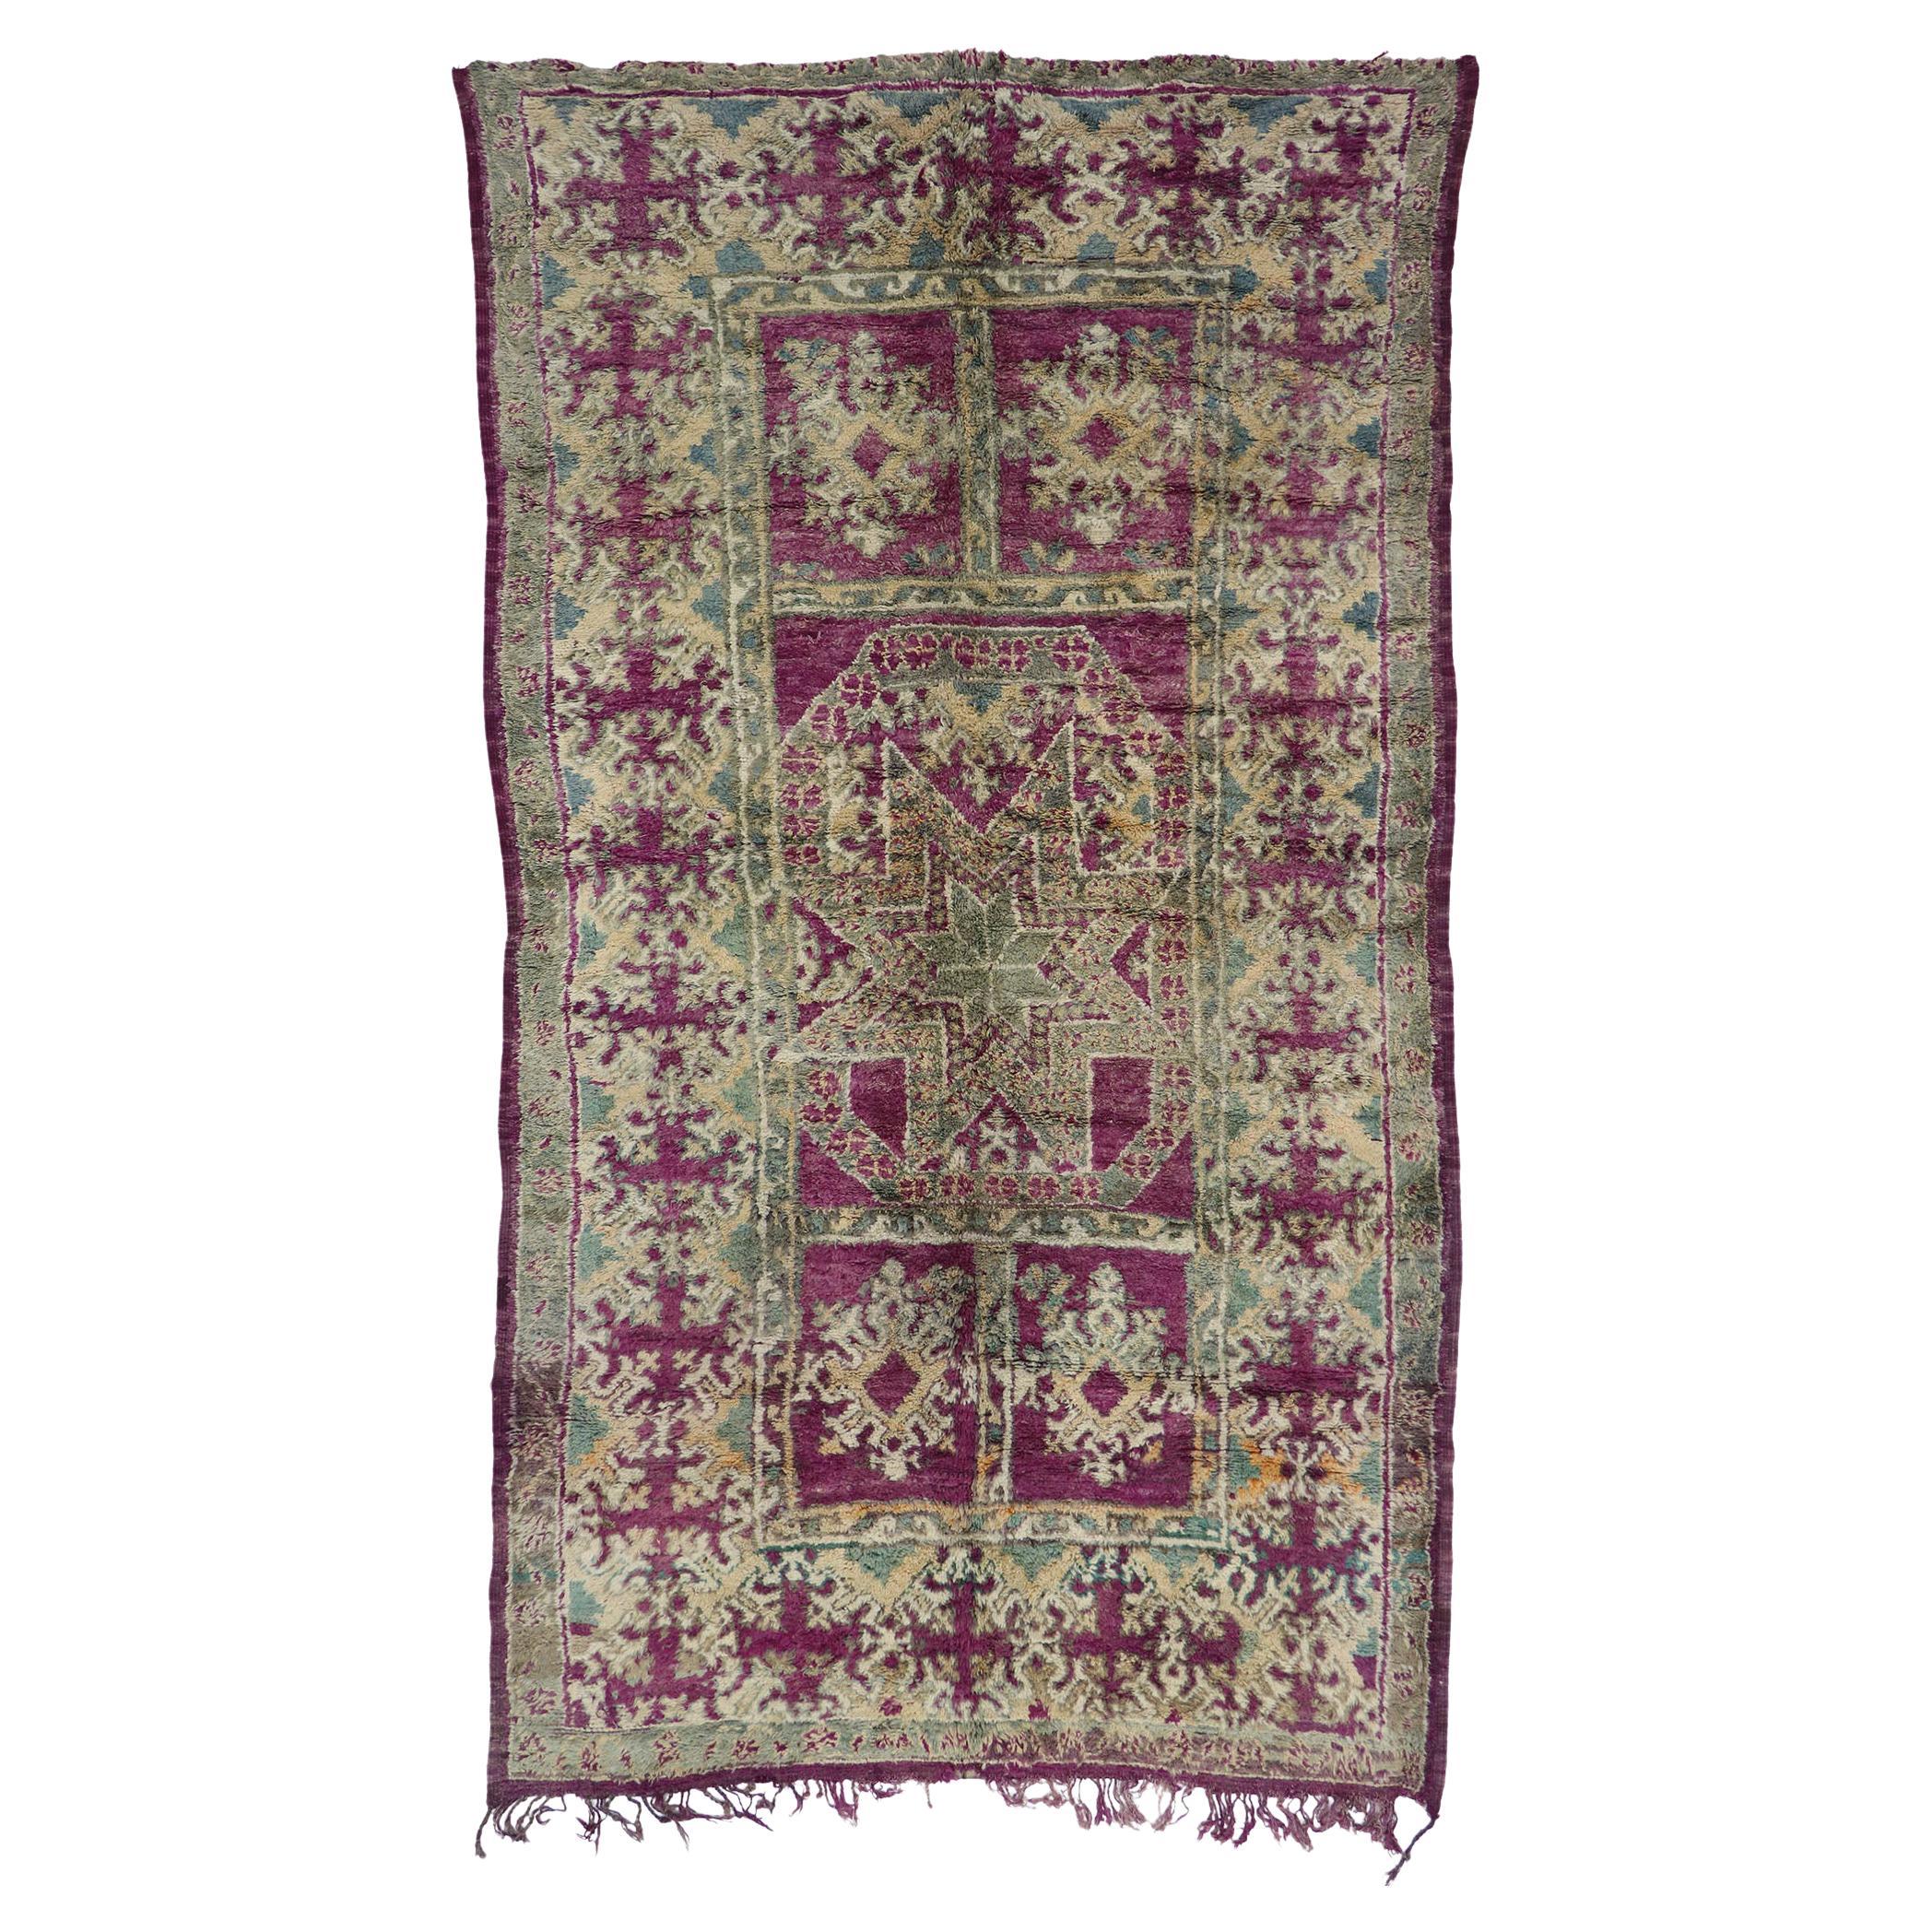 Marokkanischer Boujad-Teppich aus Berber im böhmischen Stil mit lila Boujad-Muster